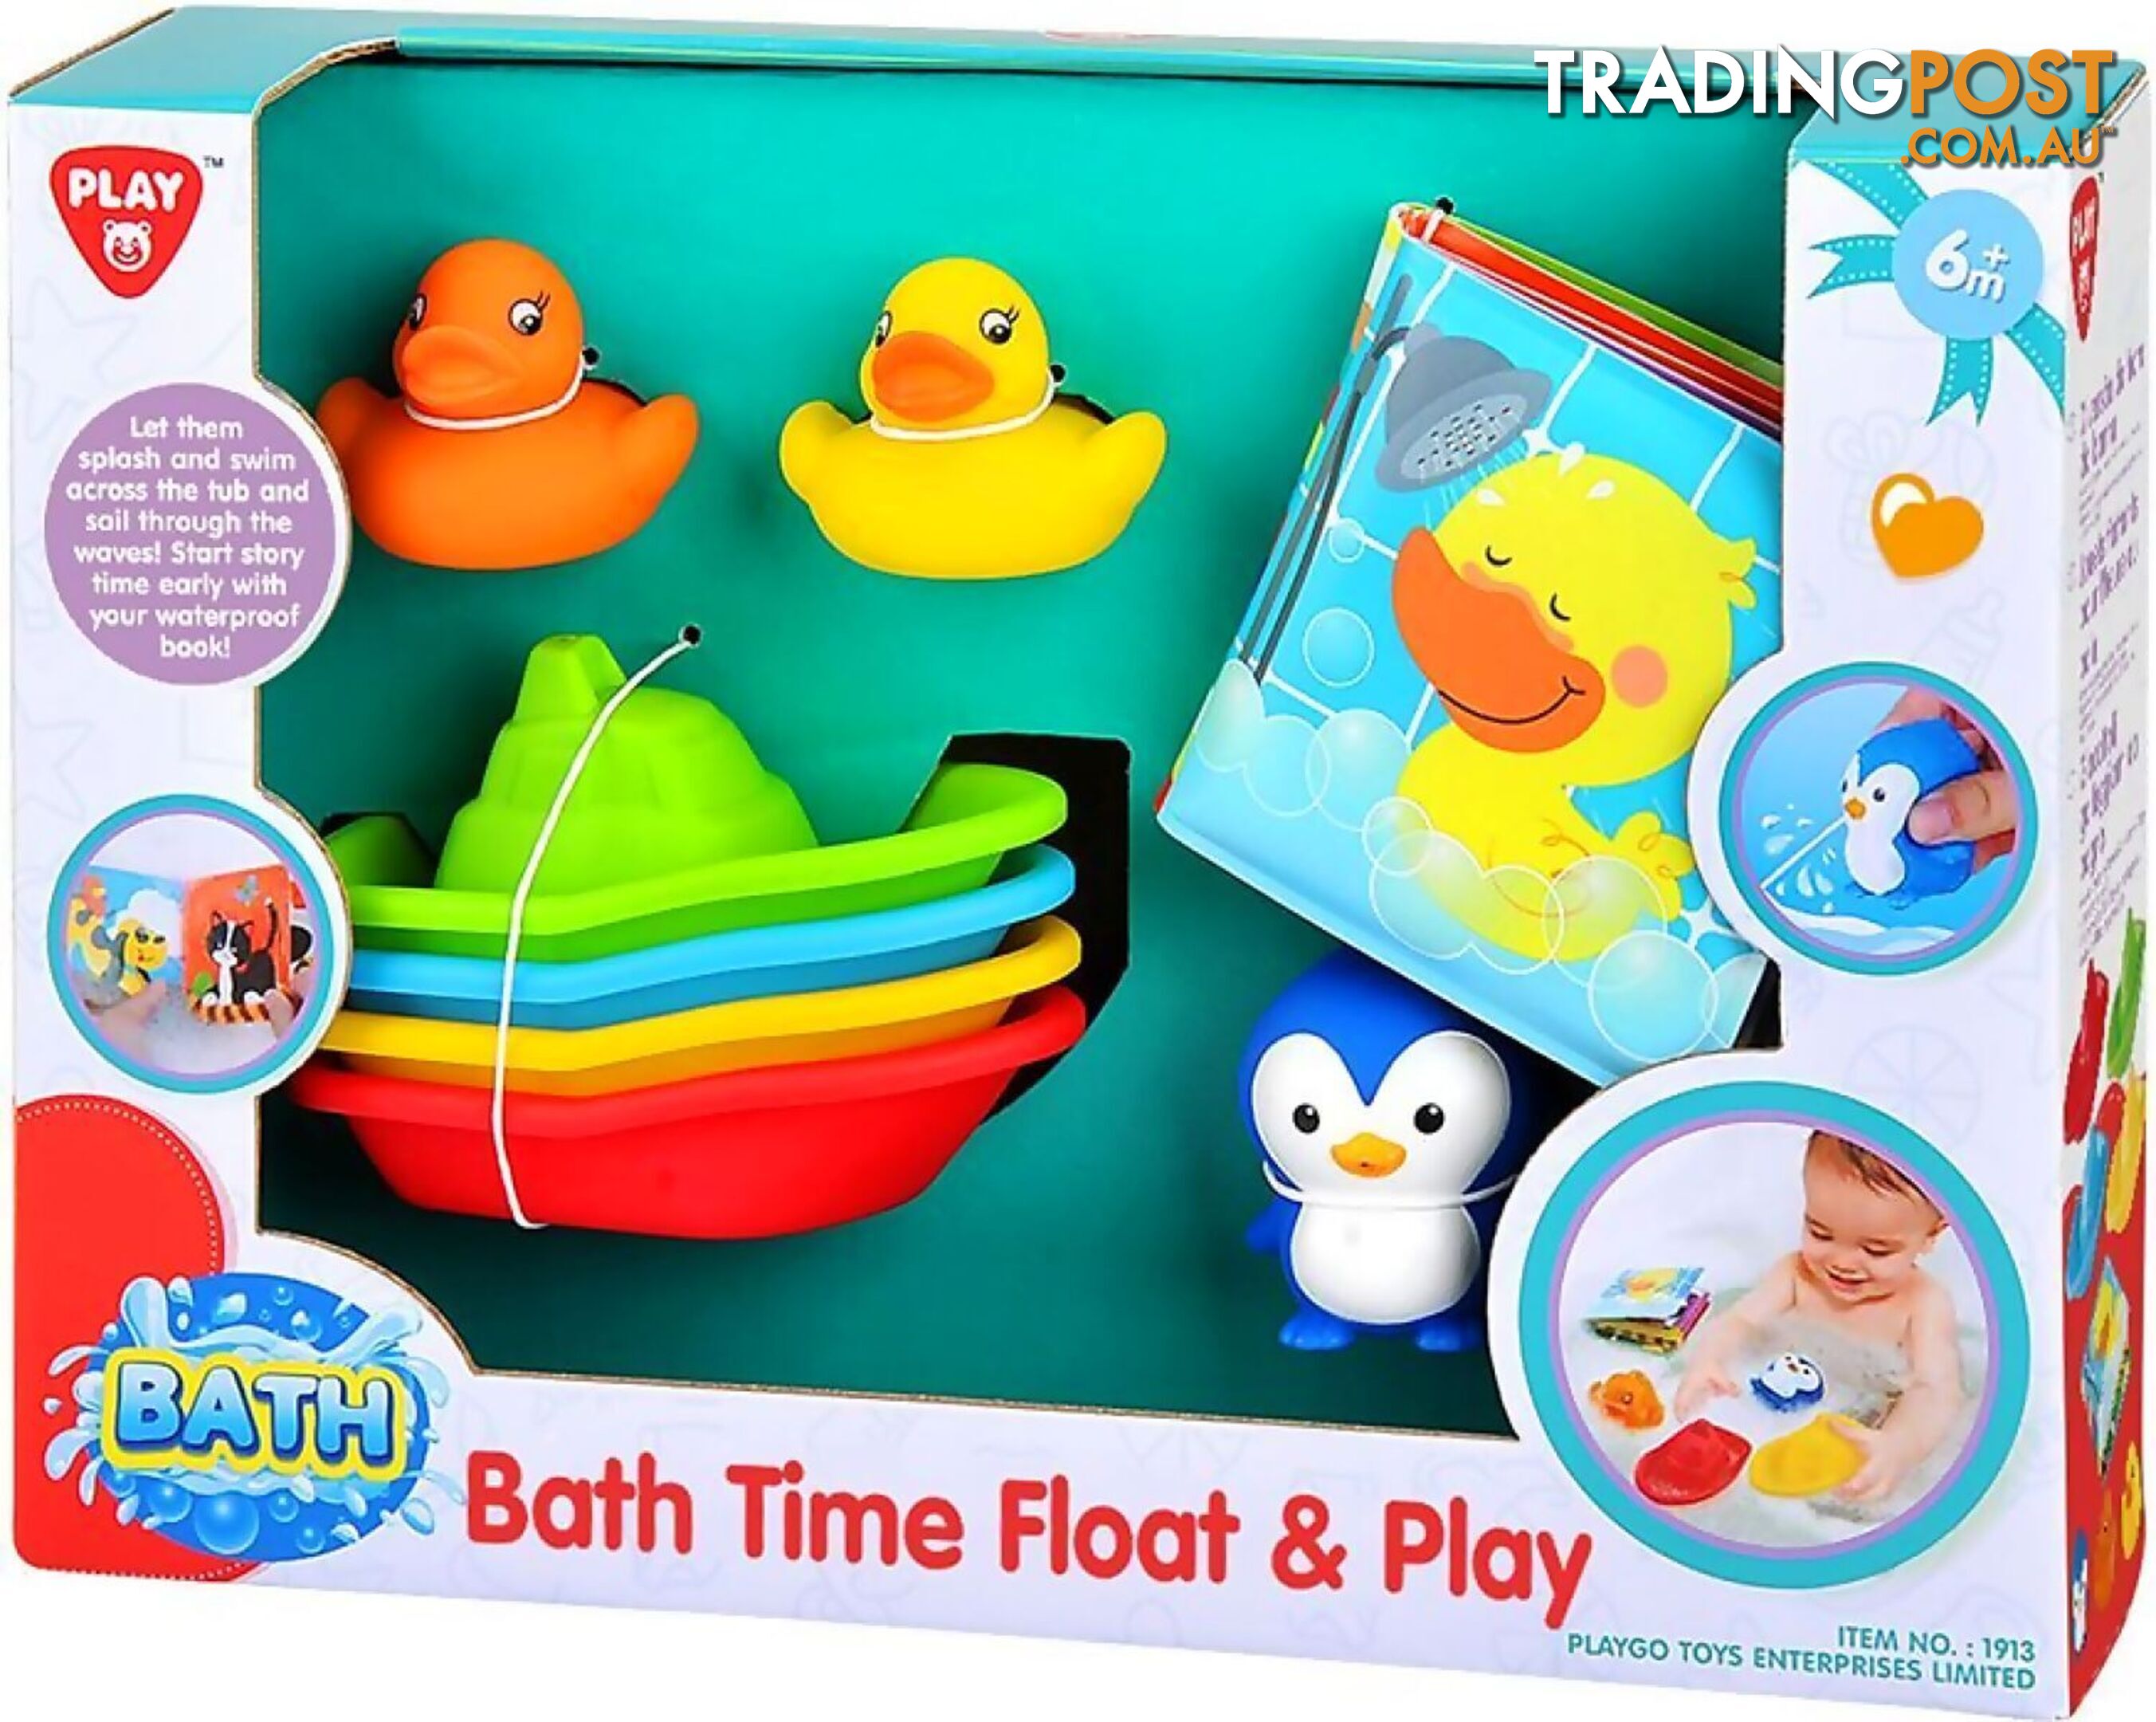 Playgo Toys Ent. Ltd. - Bath Time Float & Play - Art67139 - 4892401019134